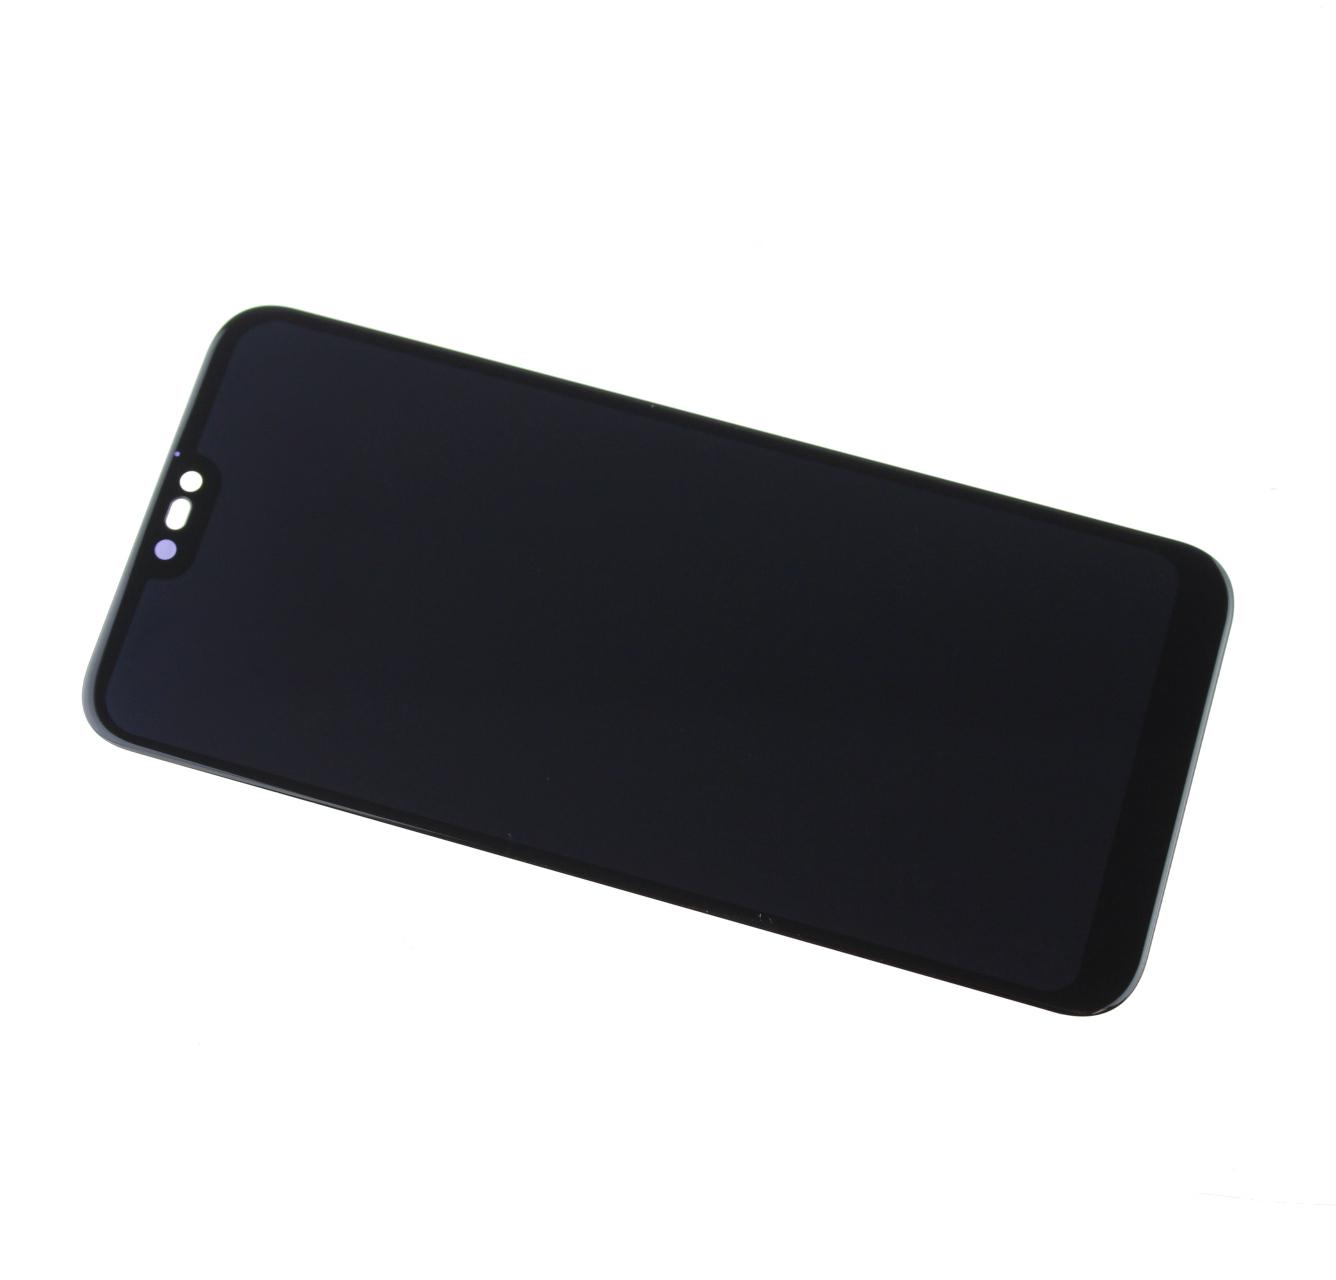 Originál LCD + Dotyková vrstva Huawei P20 Lite - Huawei P20 Lite Dual SIM černá repasovaný díl - vyměněné sklíčko